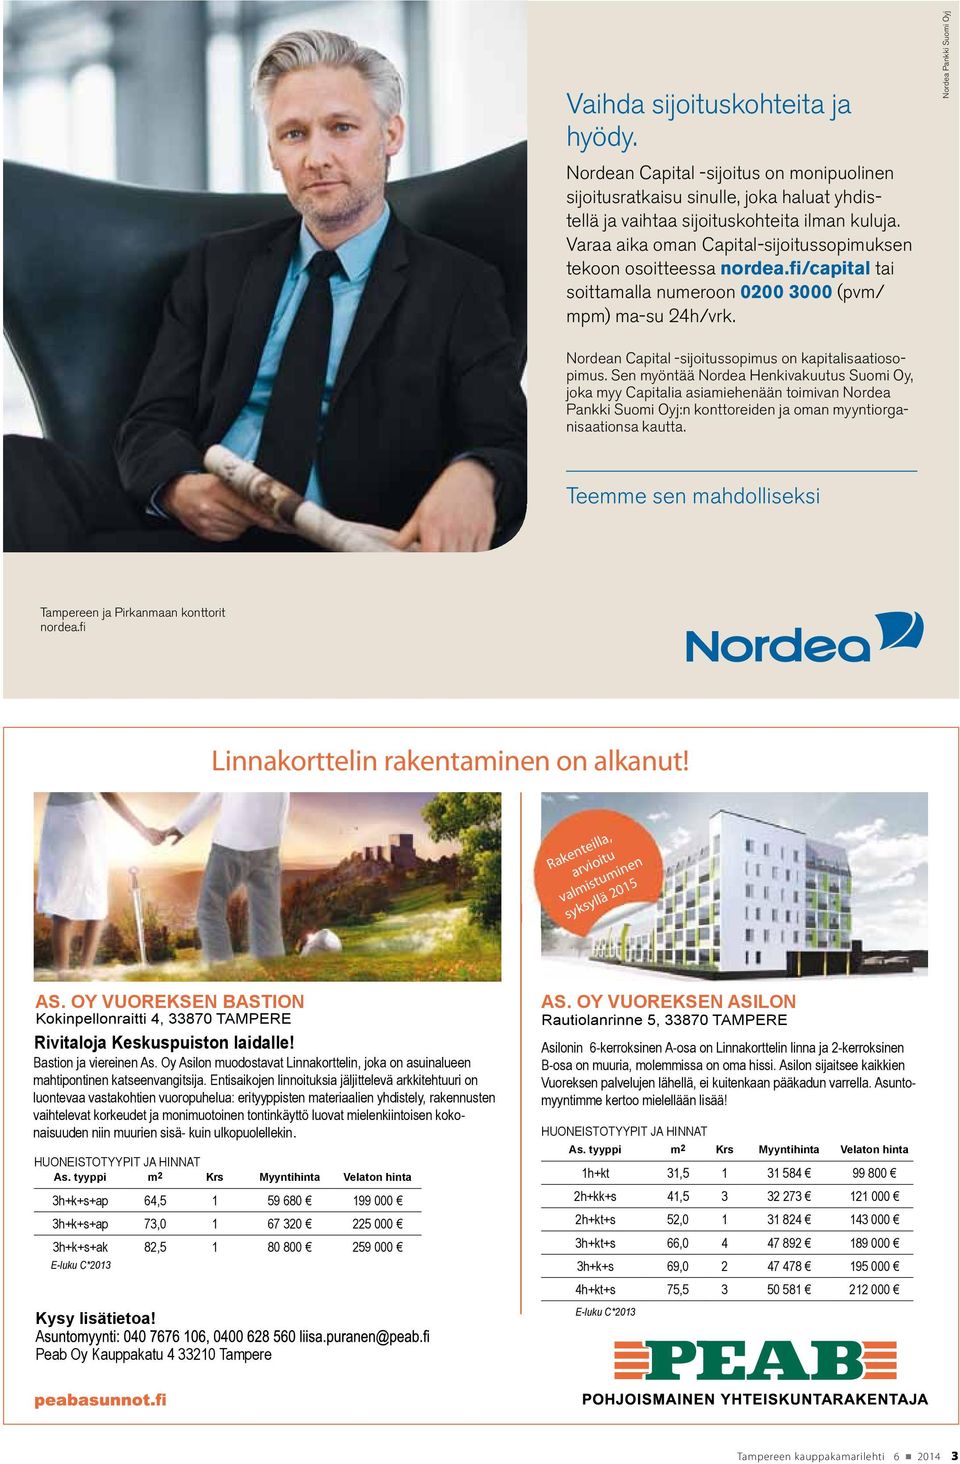 Sen myöntää Nordea Henkivakuutus Suomi Oy, joka myy Capitalia asiamiehenään toimivan Nordea Pankki Suomi Oyj:n konttoreiden ja oman myyntiorganisaationsa kautta.